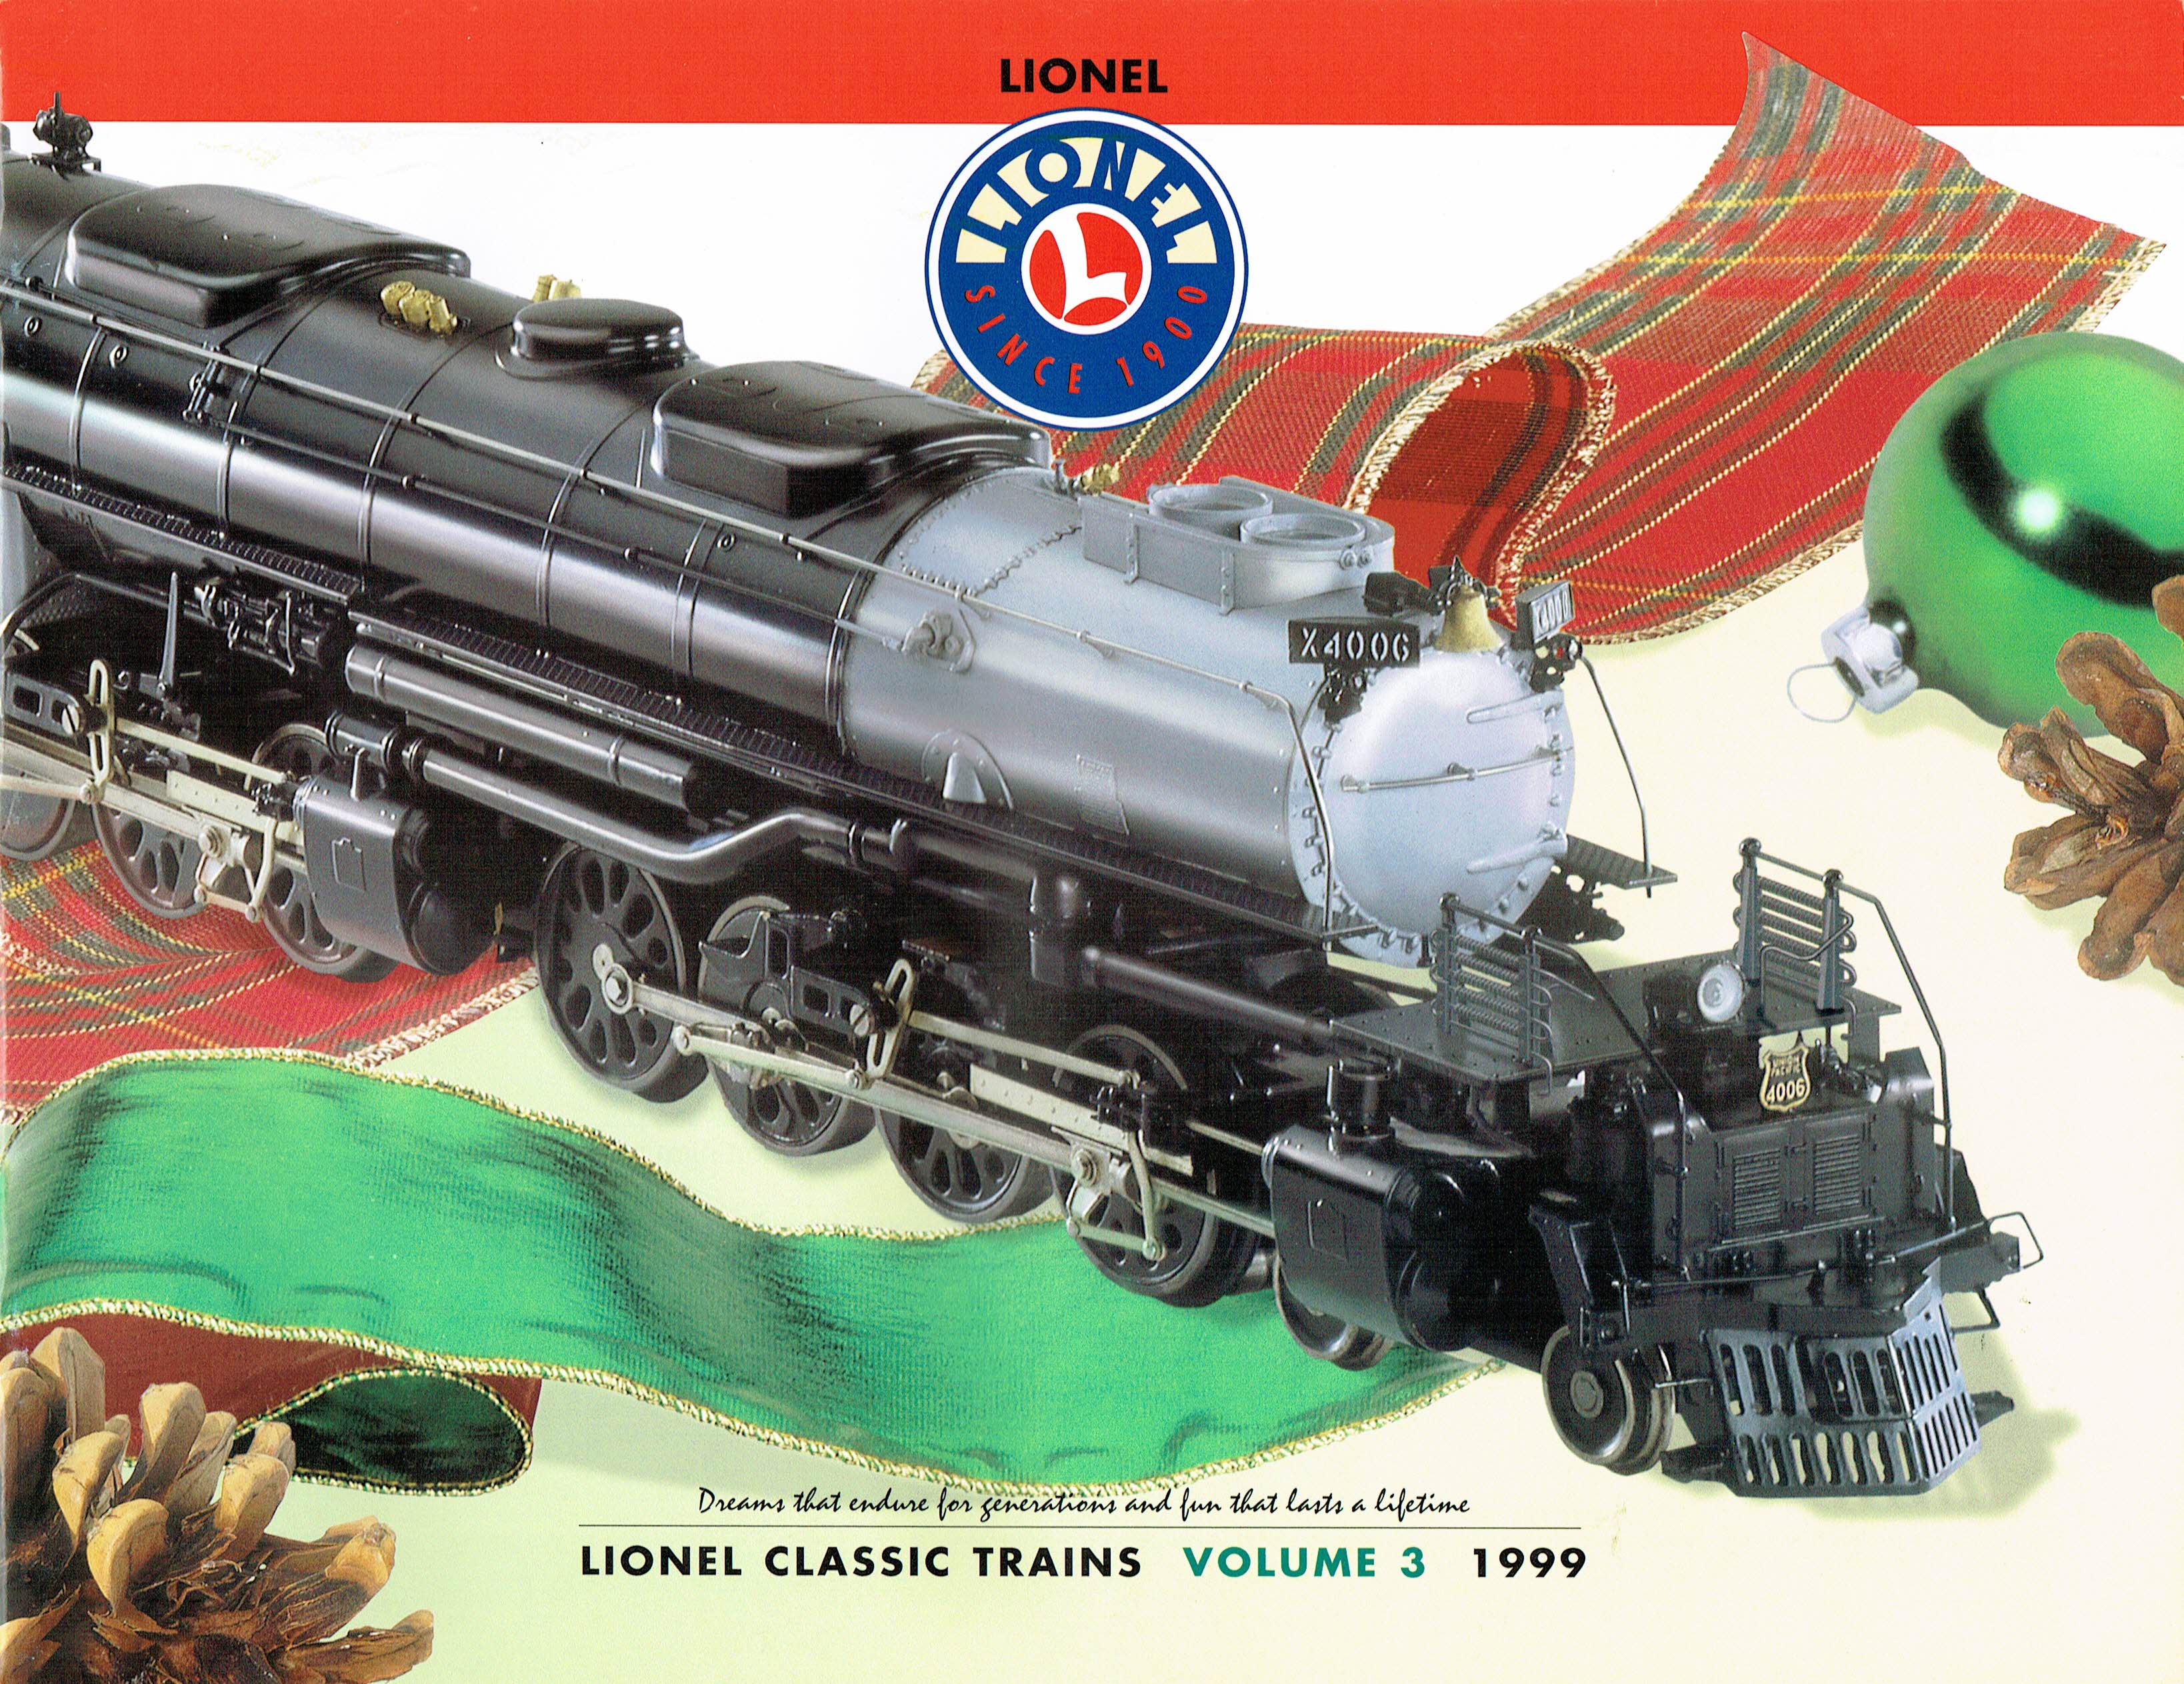 Lionel 1999 Classic Trains Volume 3 Catalog image